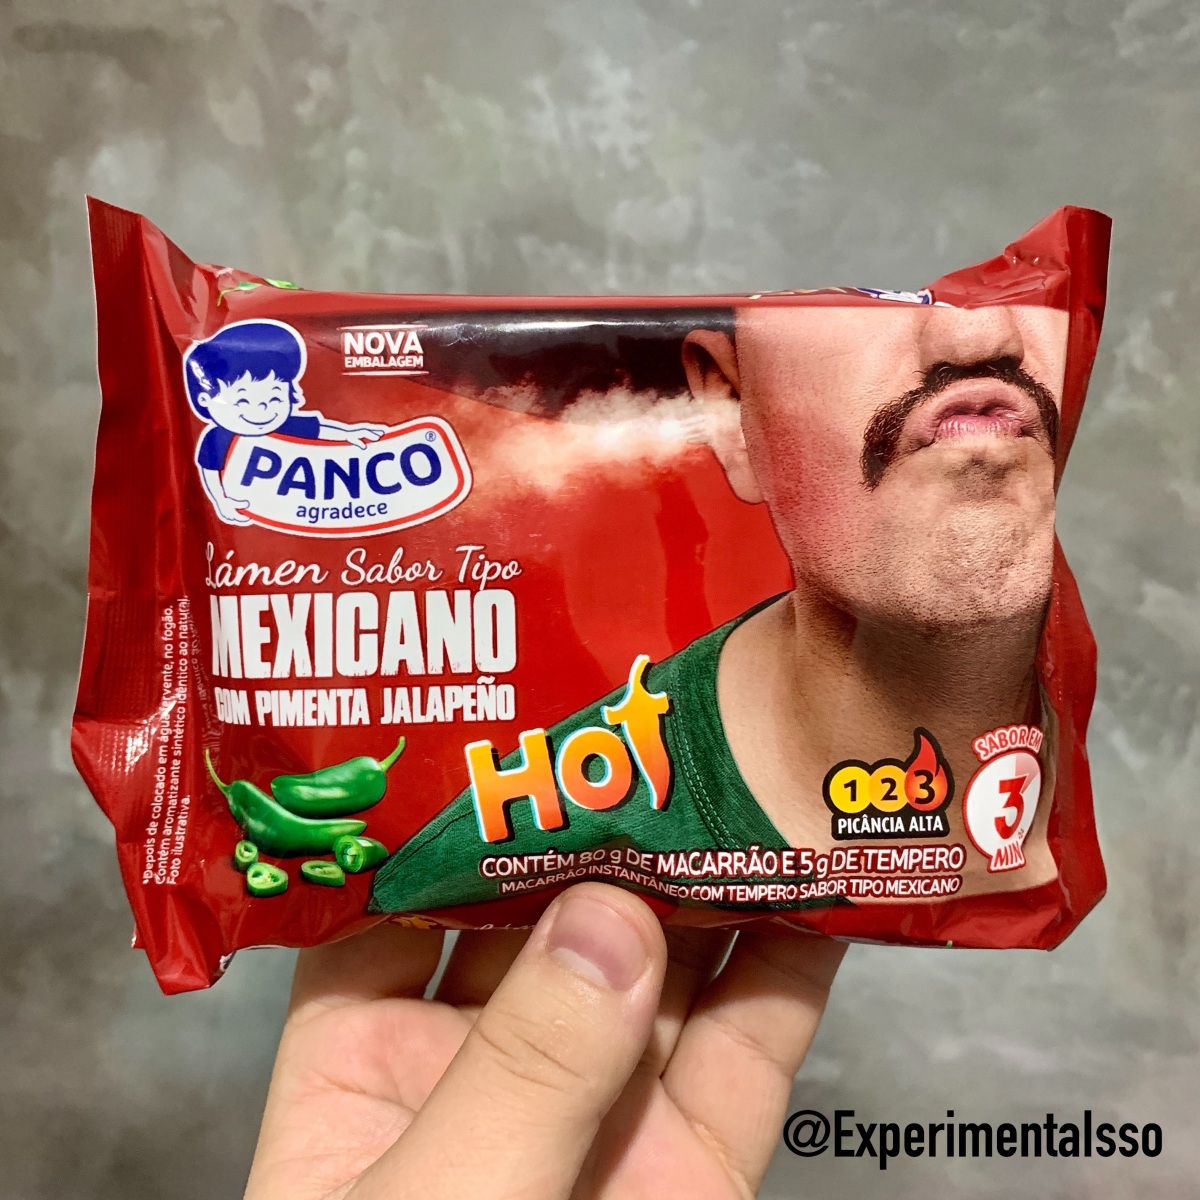 🇧🇷Panco Lámen sabor tipo Mexicano com Pimenta Jalapeño Hot